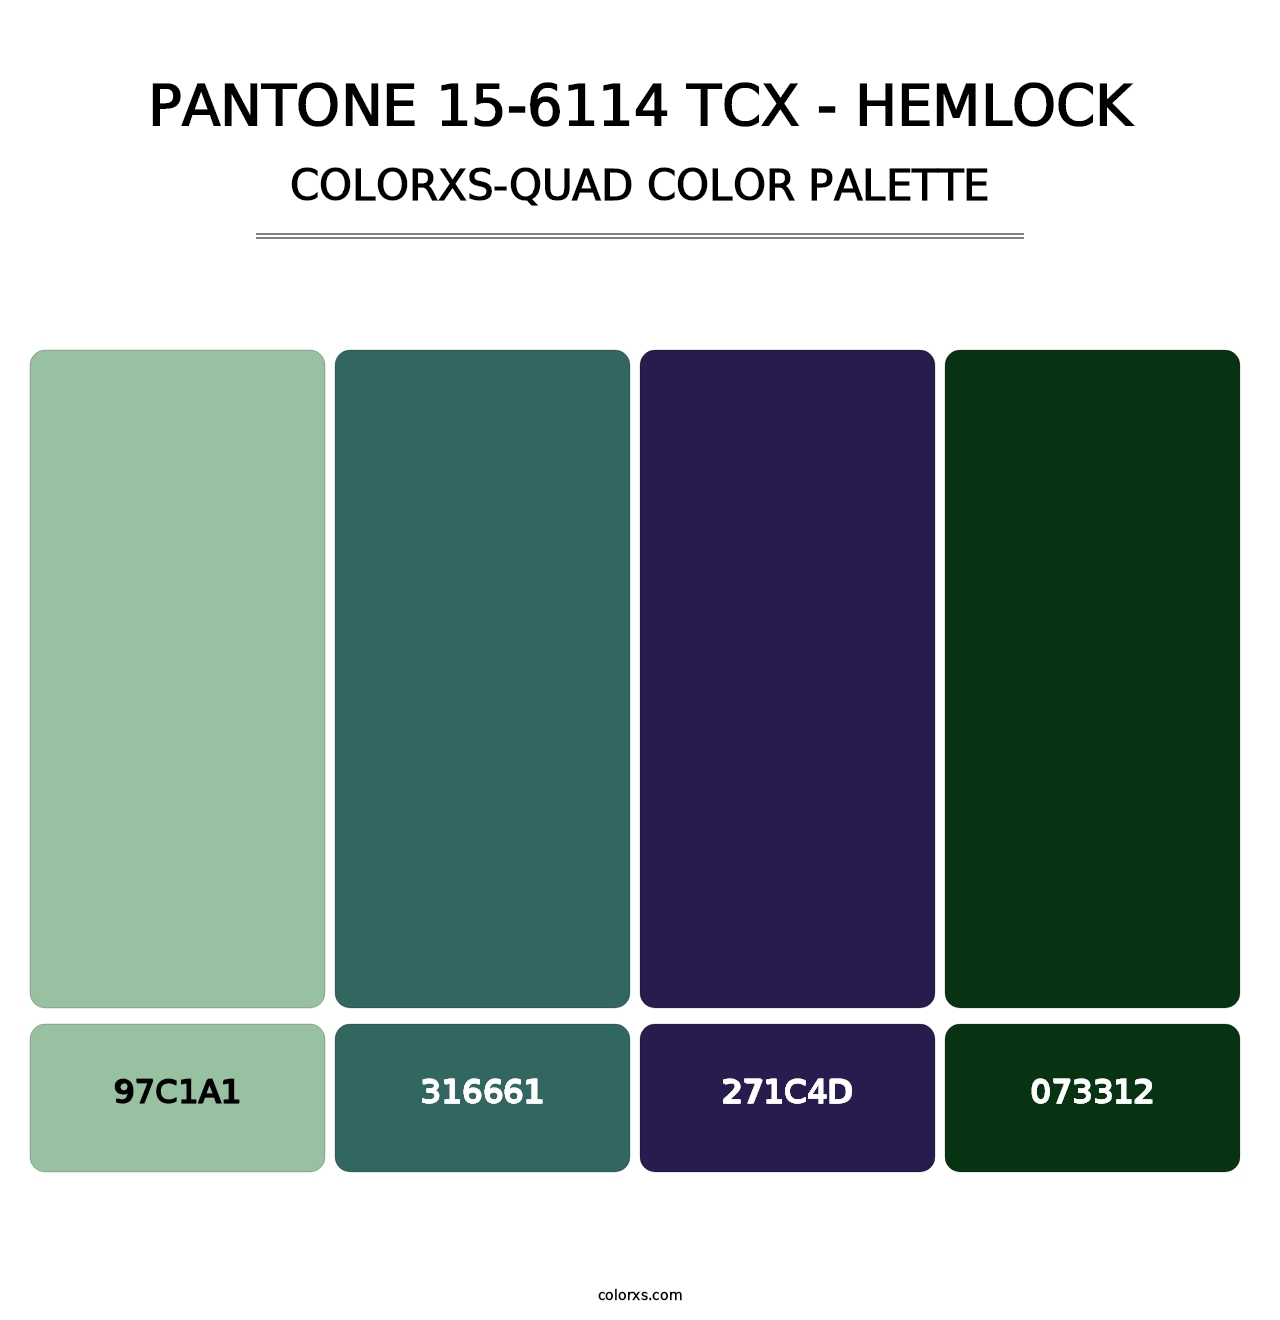 PANTONE 15-6114 TCX - Hemlock - Colorxs Quad Palette